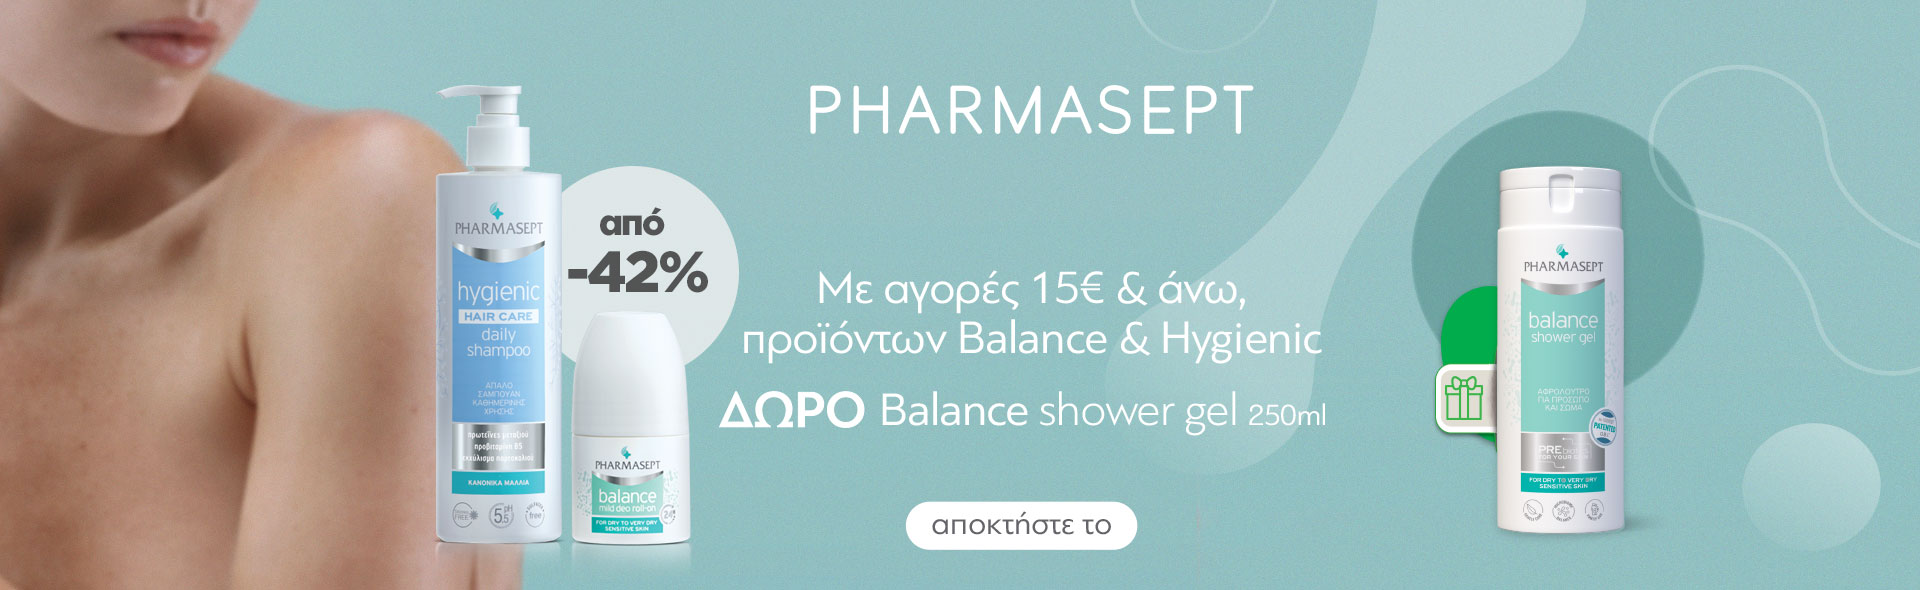 Pharmasept Hygienic and Balance